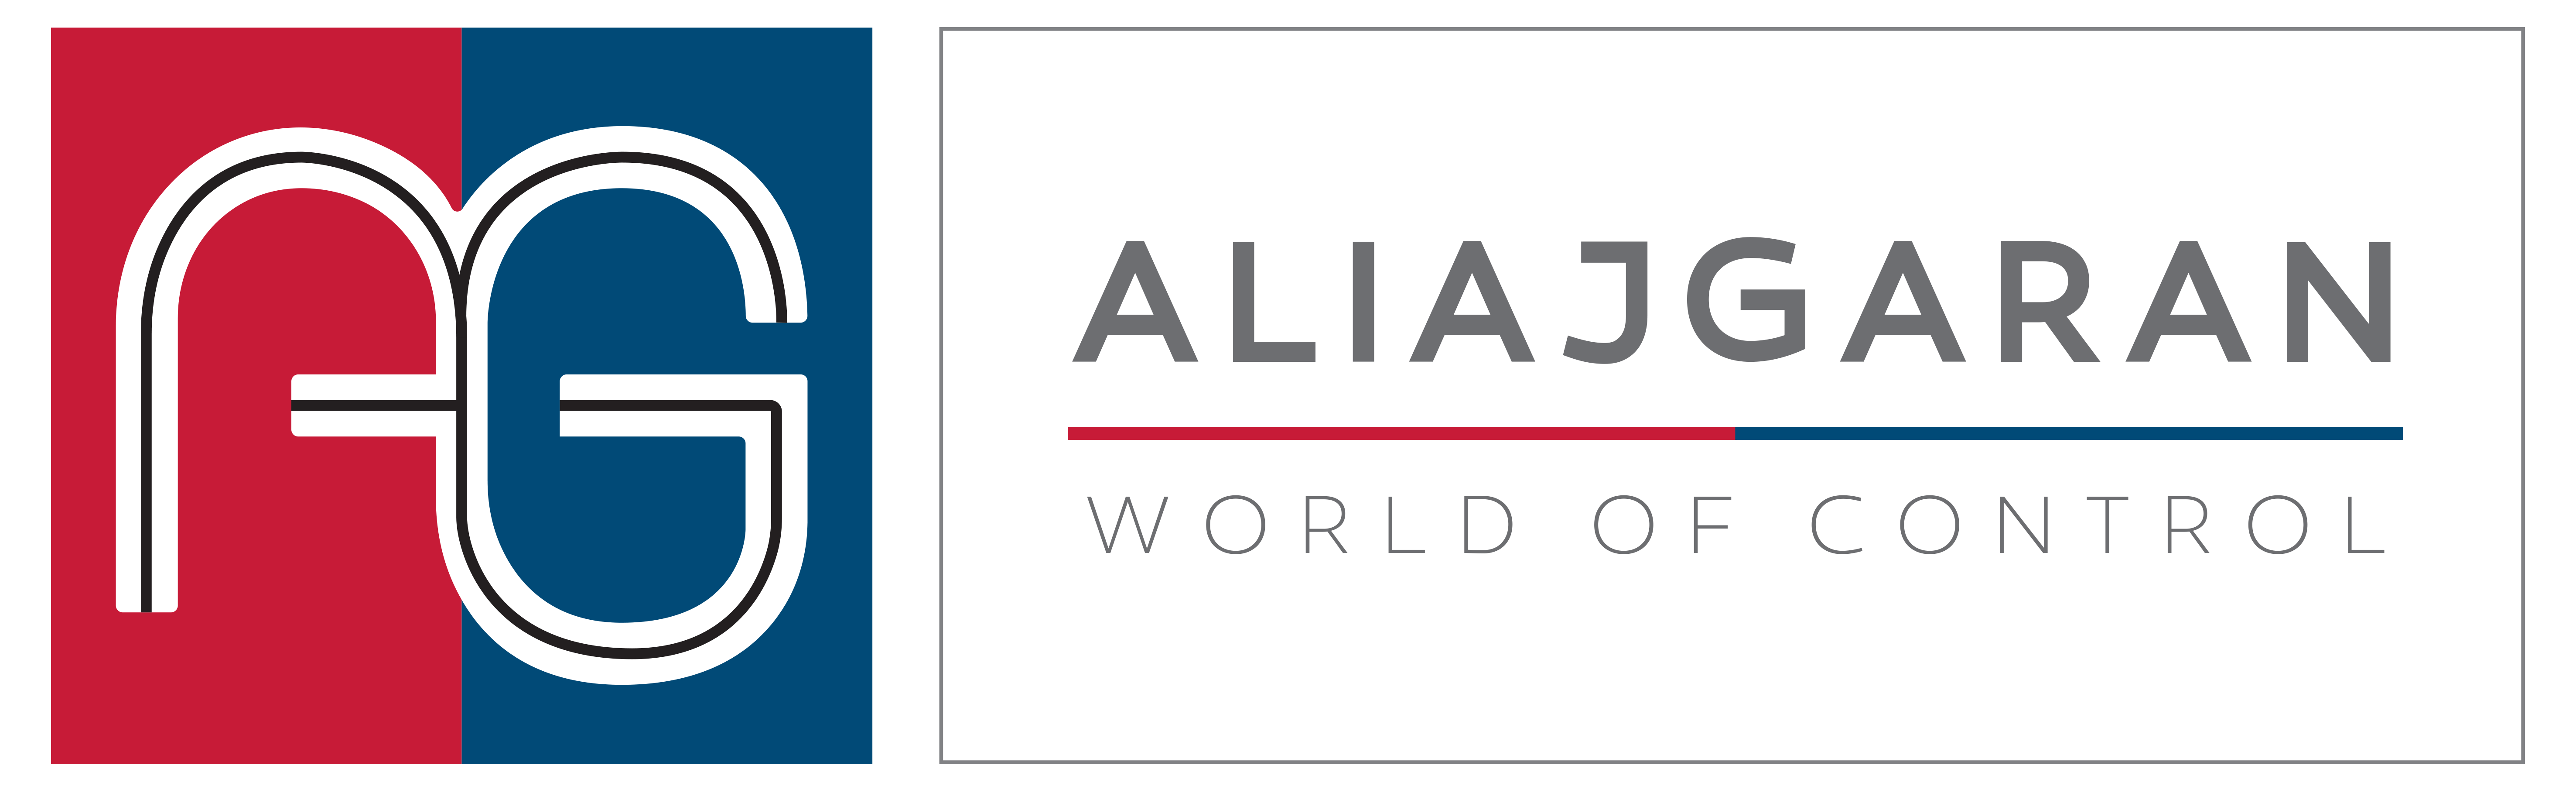 Aliajgaran logo